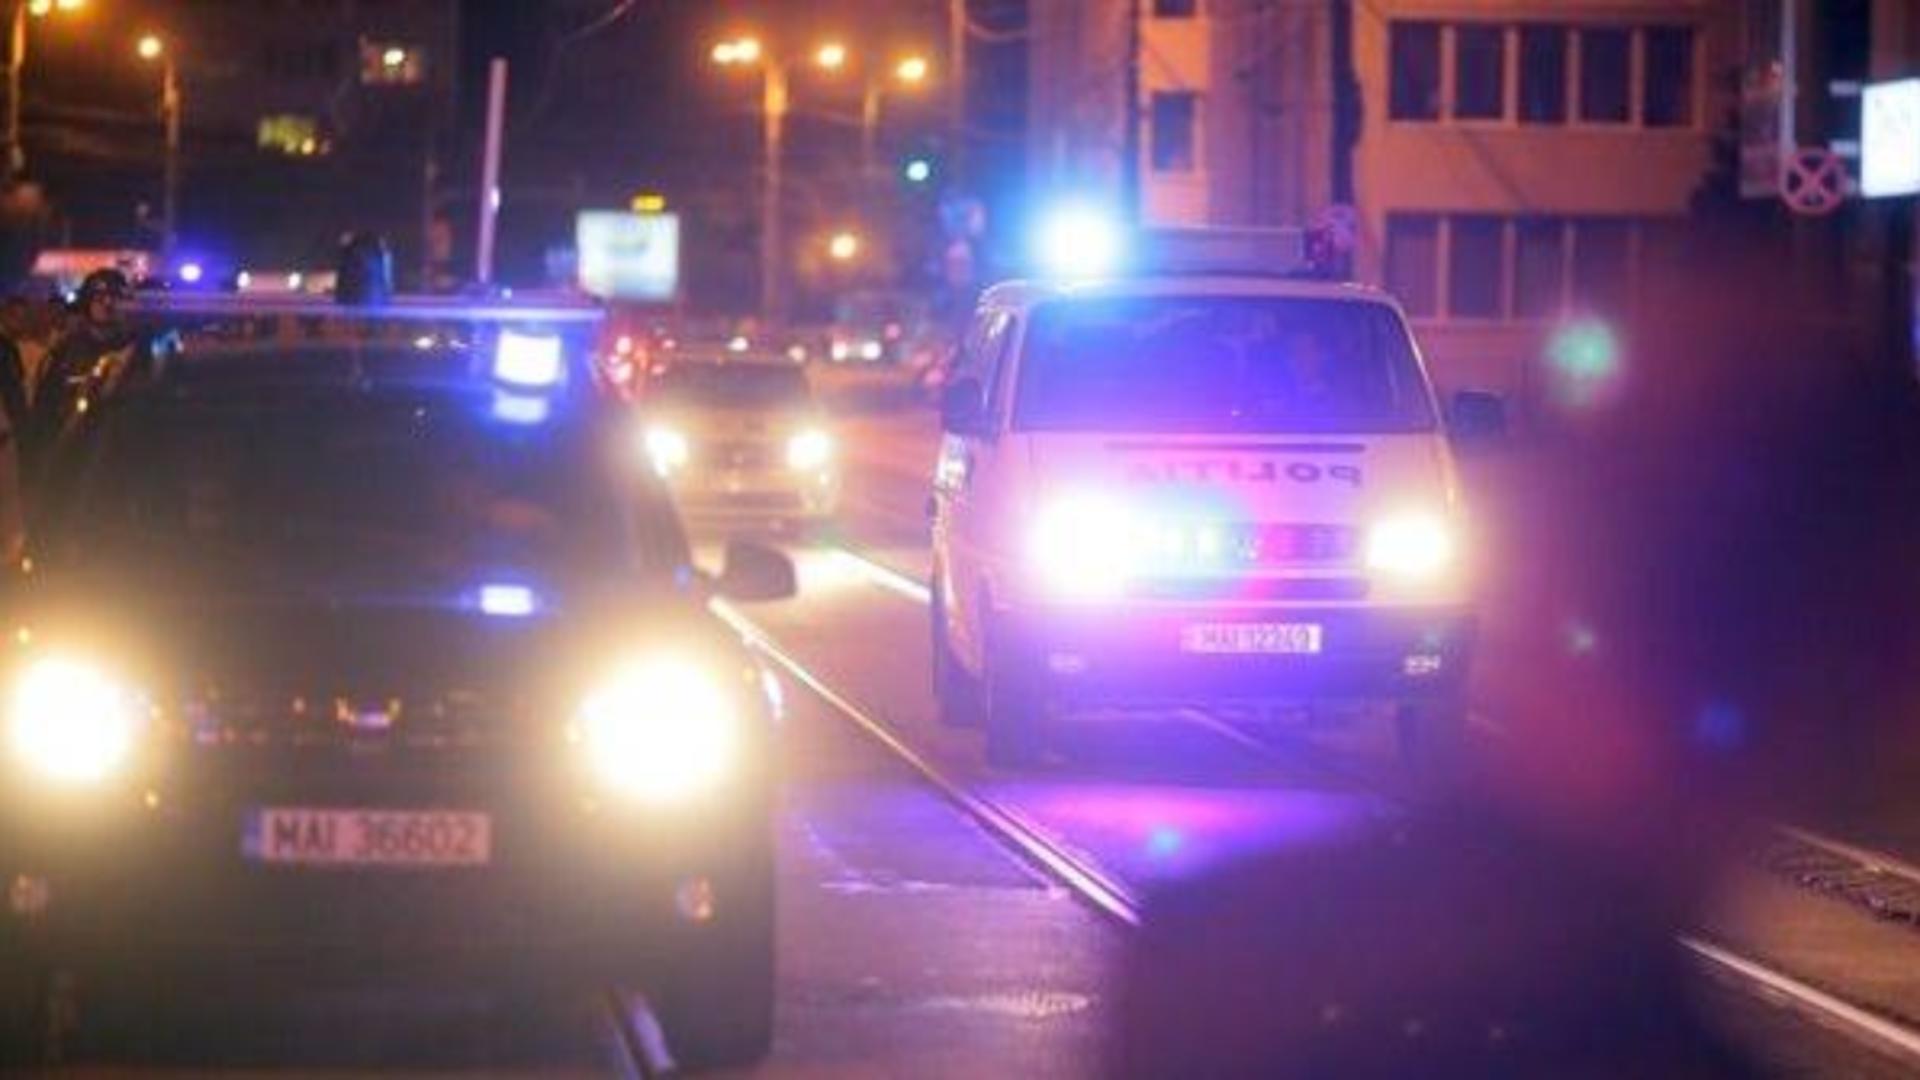 Alertă la Timișoara, femeie ucisă în propria casă. Poliția îl caută pe ucigaș